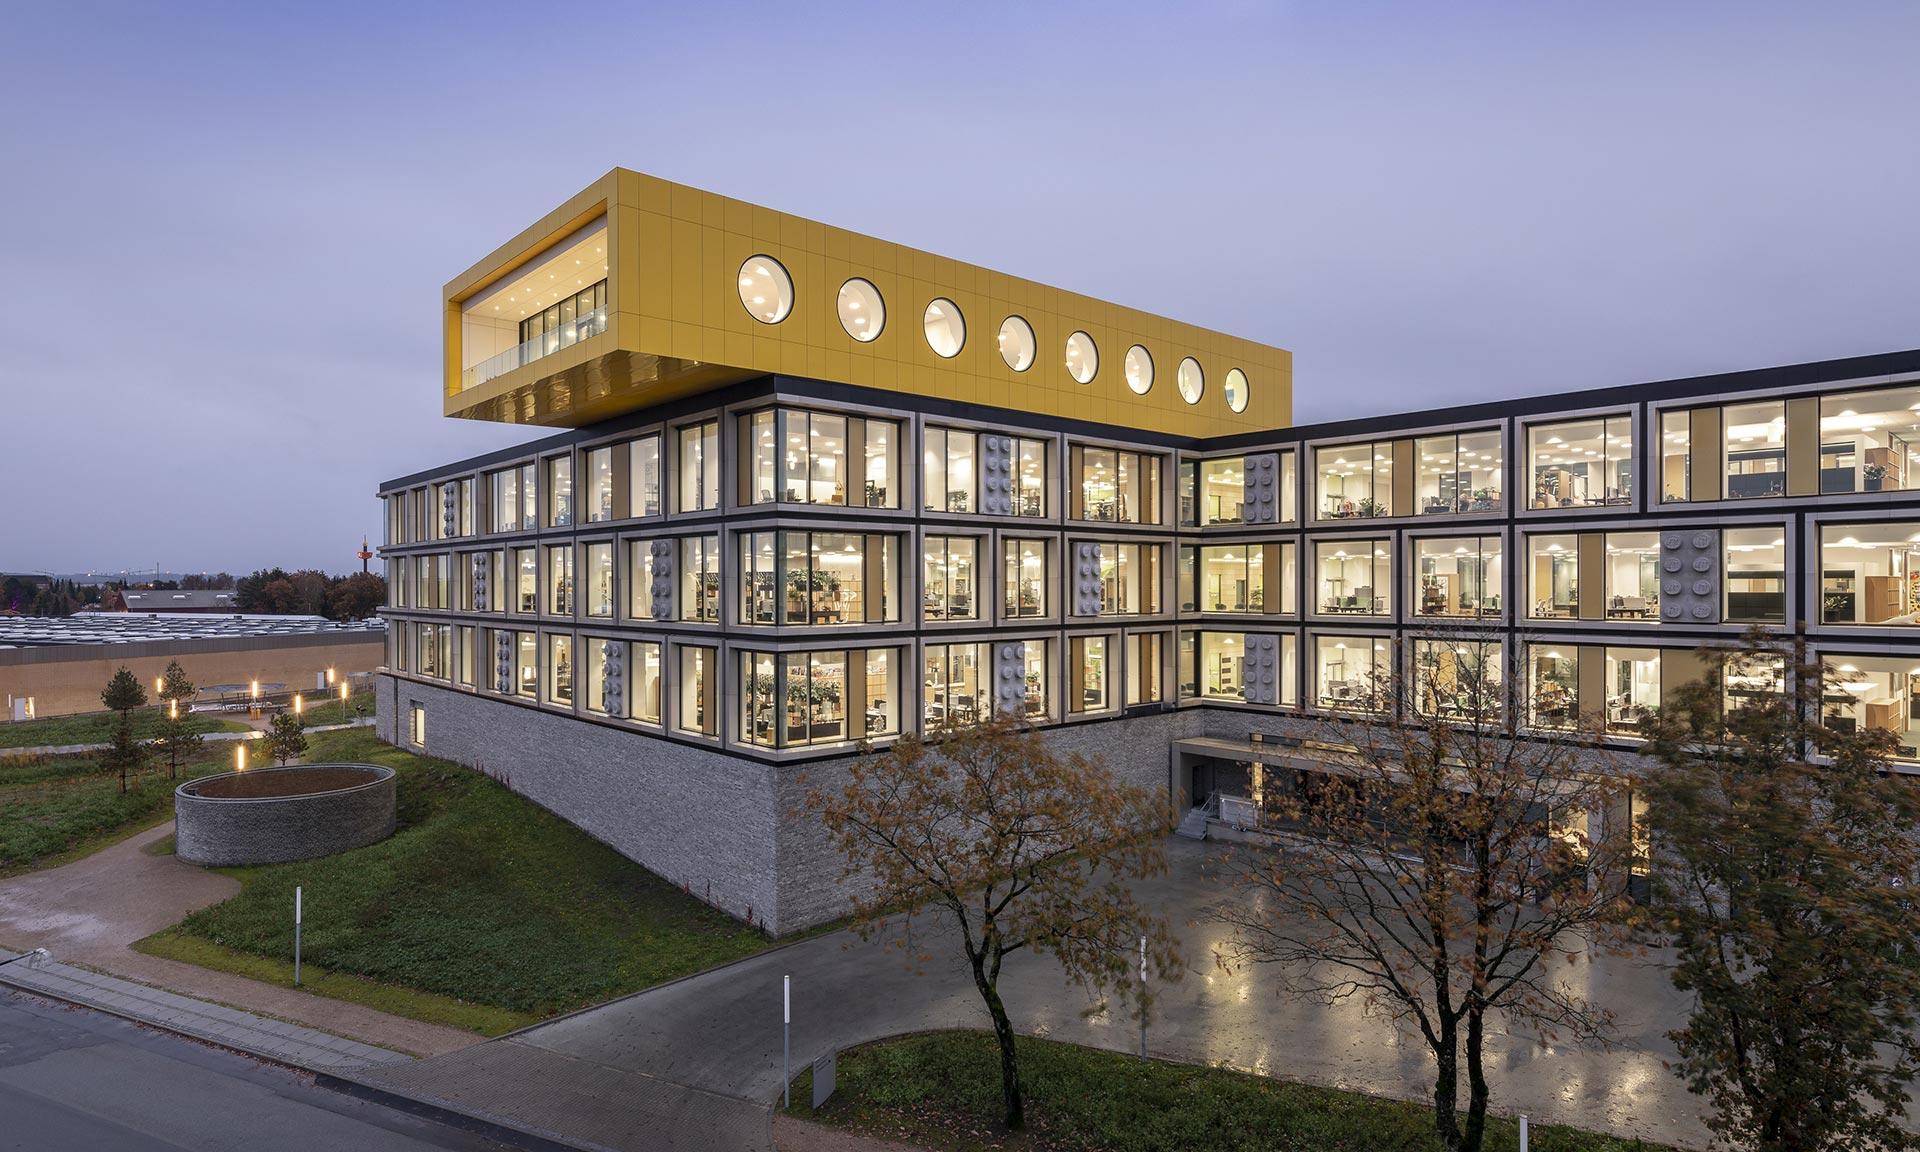 Lego otevřelo v Dánsku první část svého kampusu se žlutou hernou na střeše